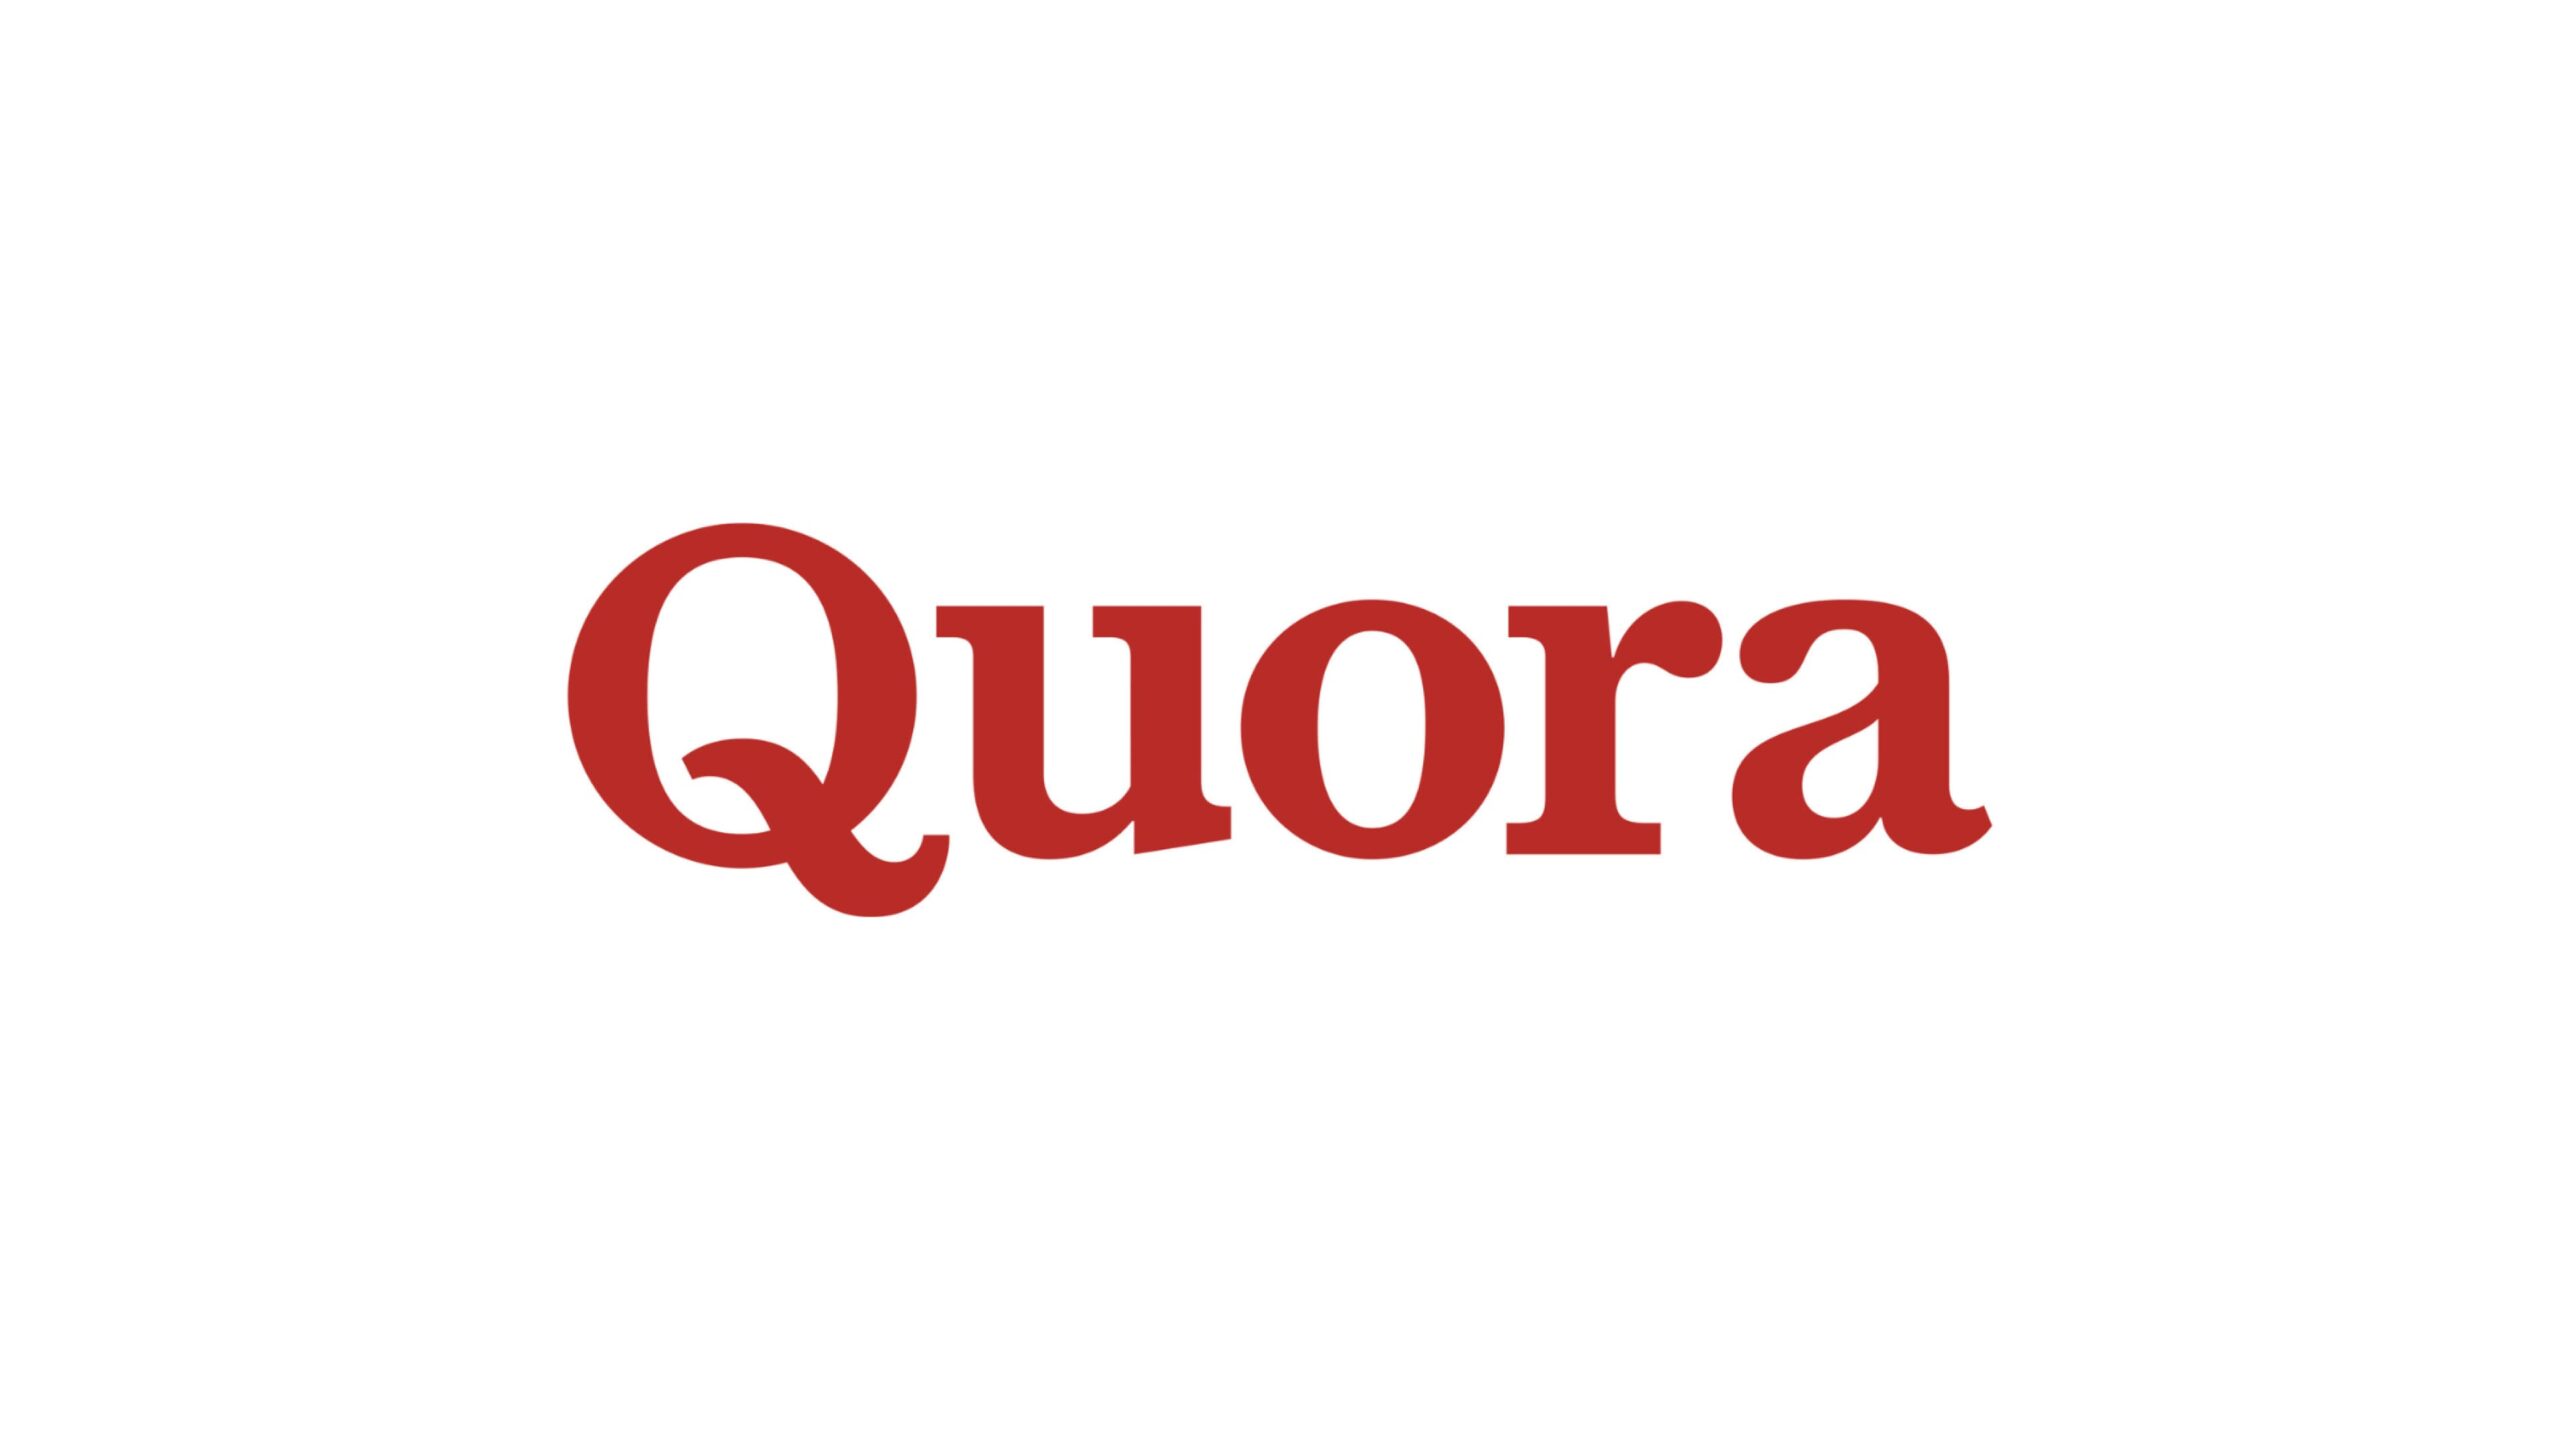 Quora、AIチャットボットプラットフォーム「Poe」を成長させるためa16zから7,500万ドルを調達